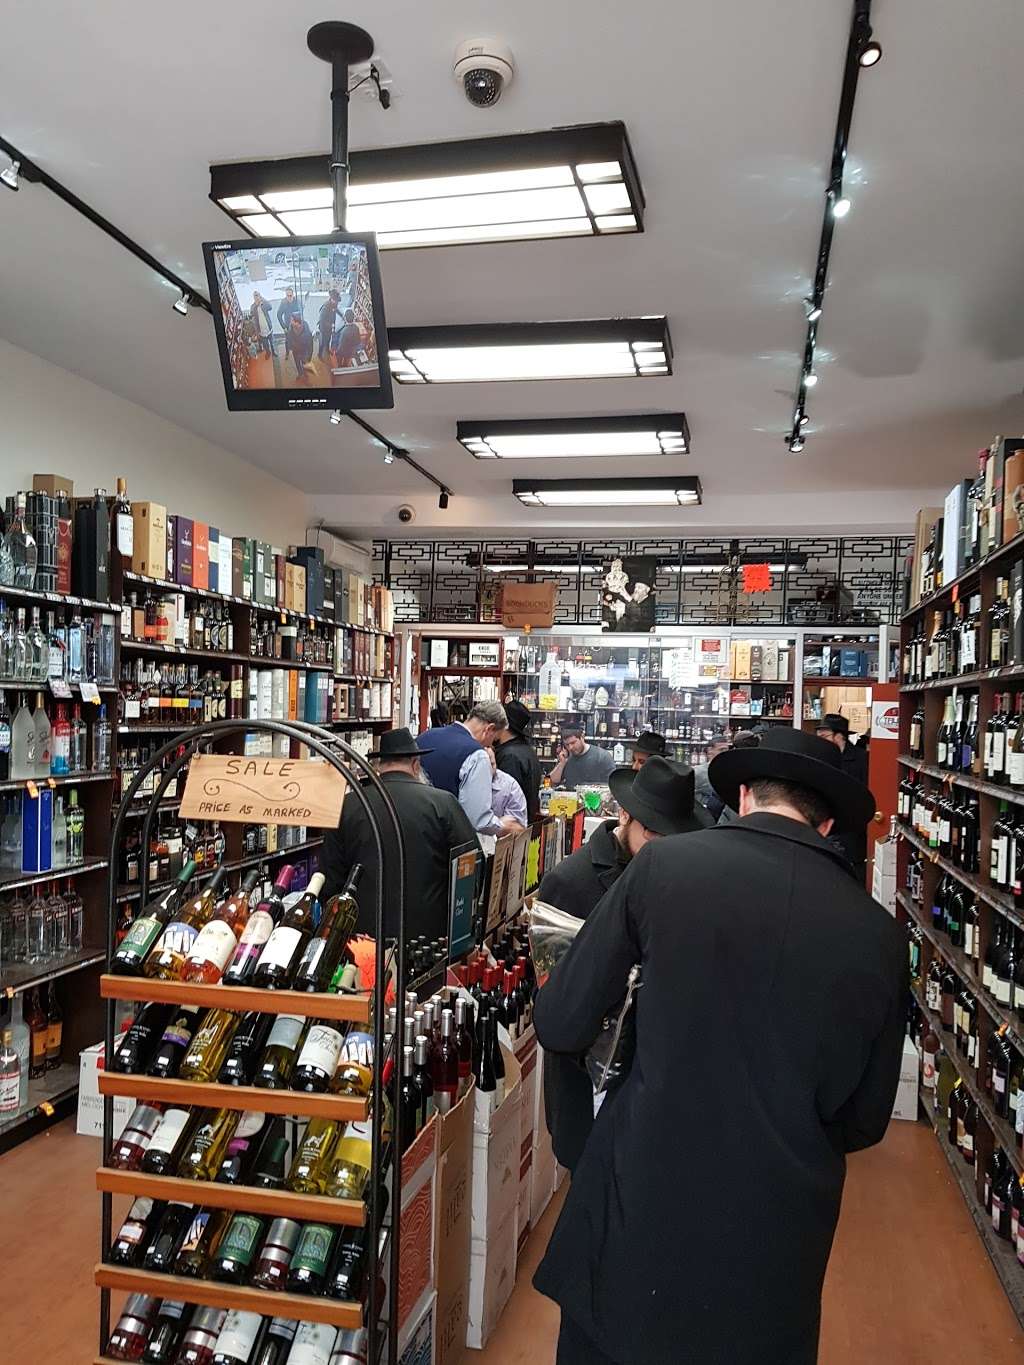 Ebers Liquor & Wine inc | 314 Kingston Ave, Brooklyn, NY 11213 | Phone: (718) 604-8700